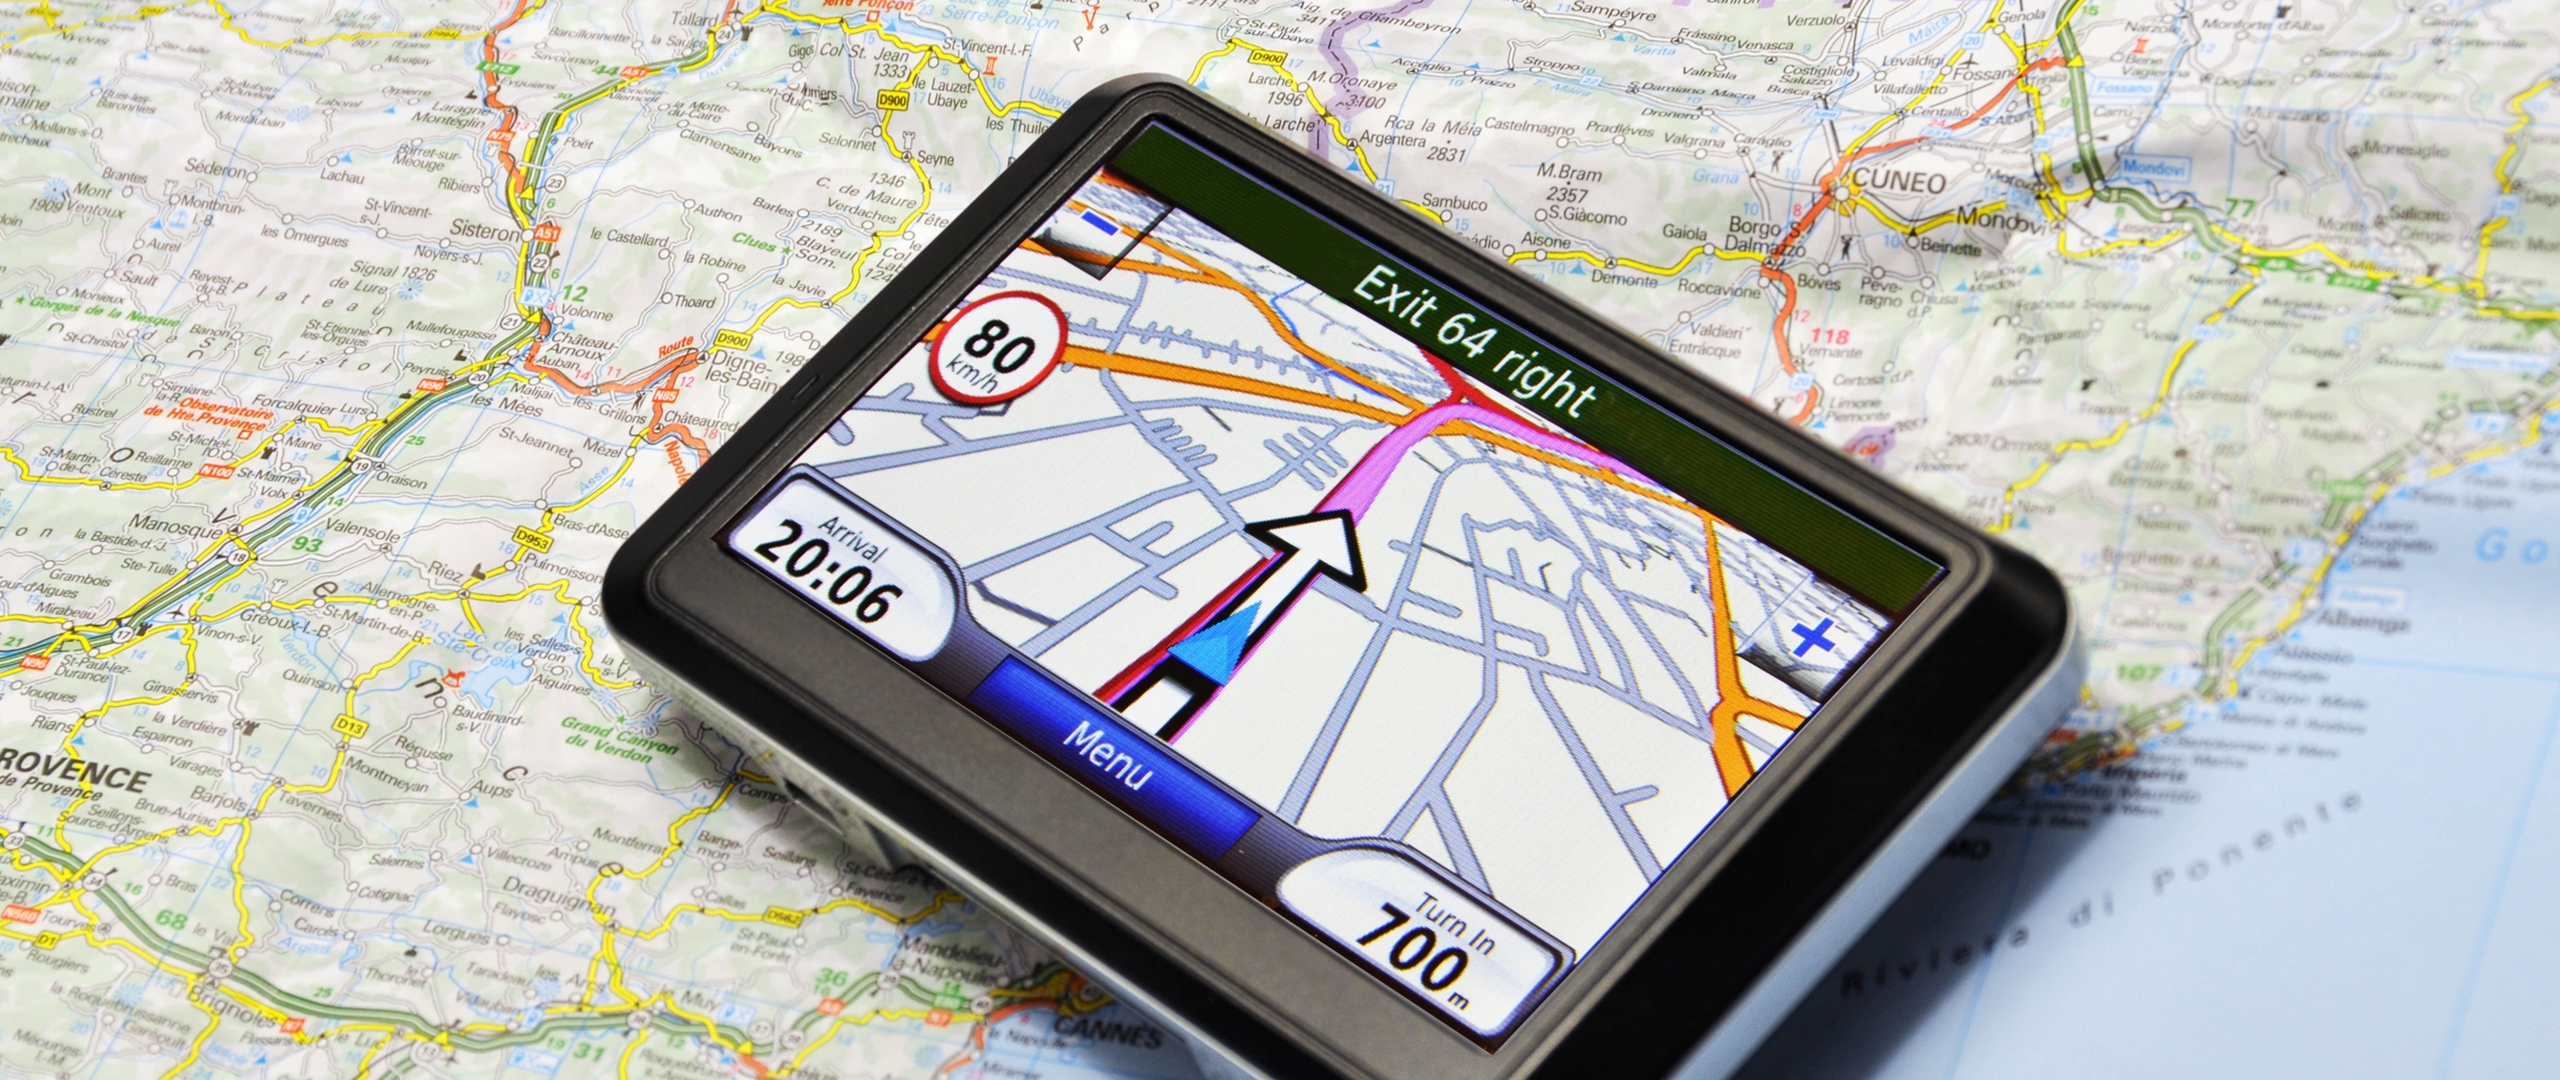 Арта навигатор. Навигатор. Карта навигации. GPS карта. Навигатор с фотографиями местности.